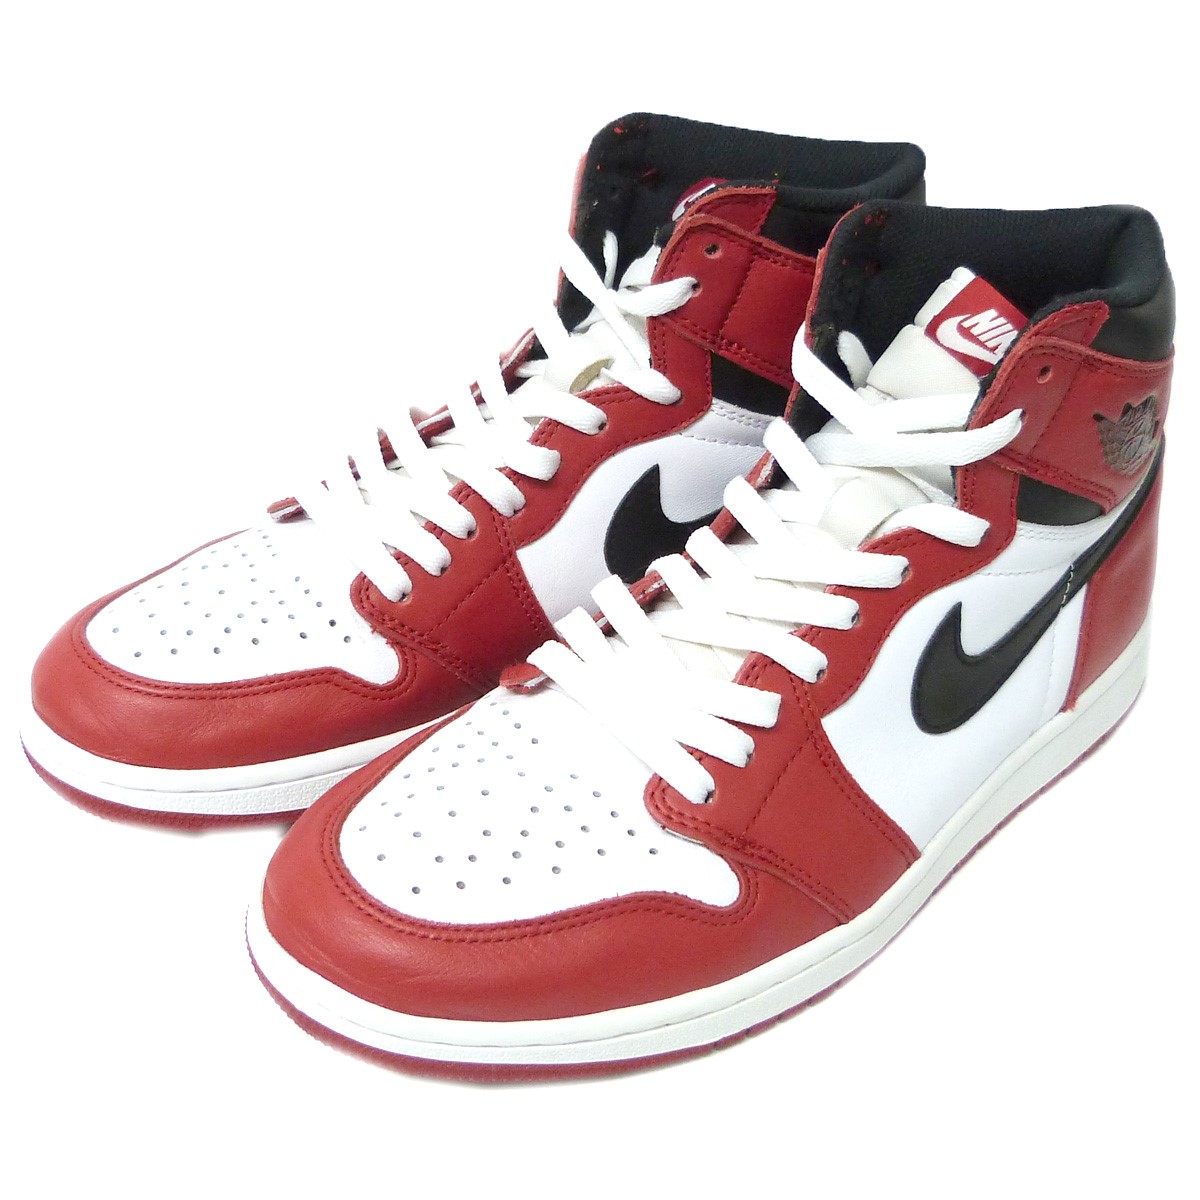 Nike Air Jordan1 ナイキ エアジョーダン1 を神戸で売るなら高価買取のカインドオル元町店へ カインドオル Kindal 神戸元町店 ブランド古着買取 販売 通販